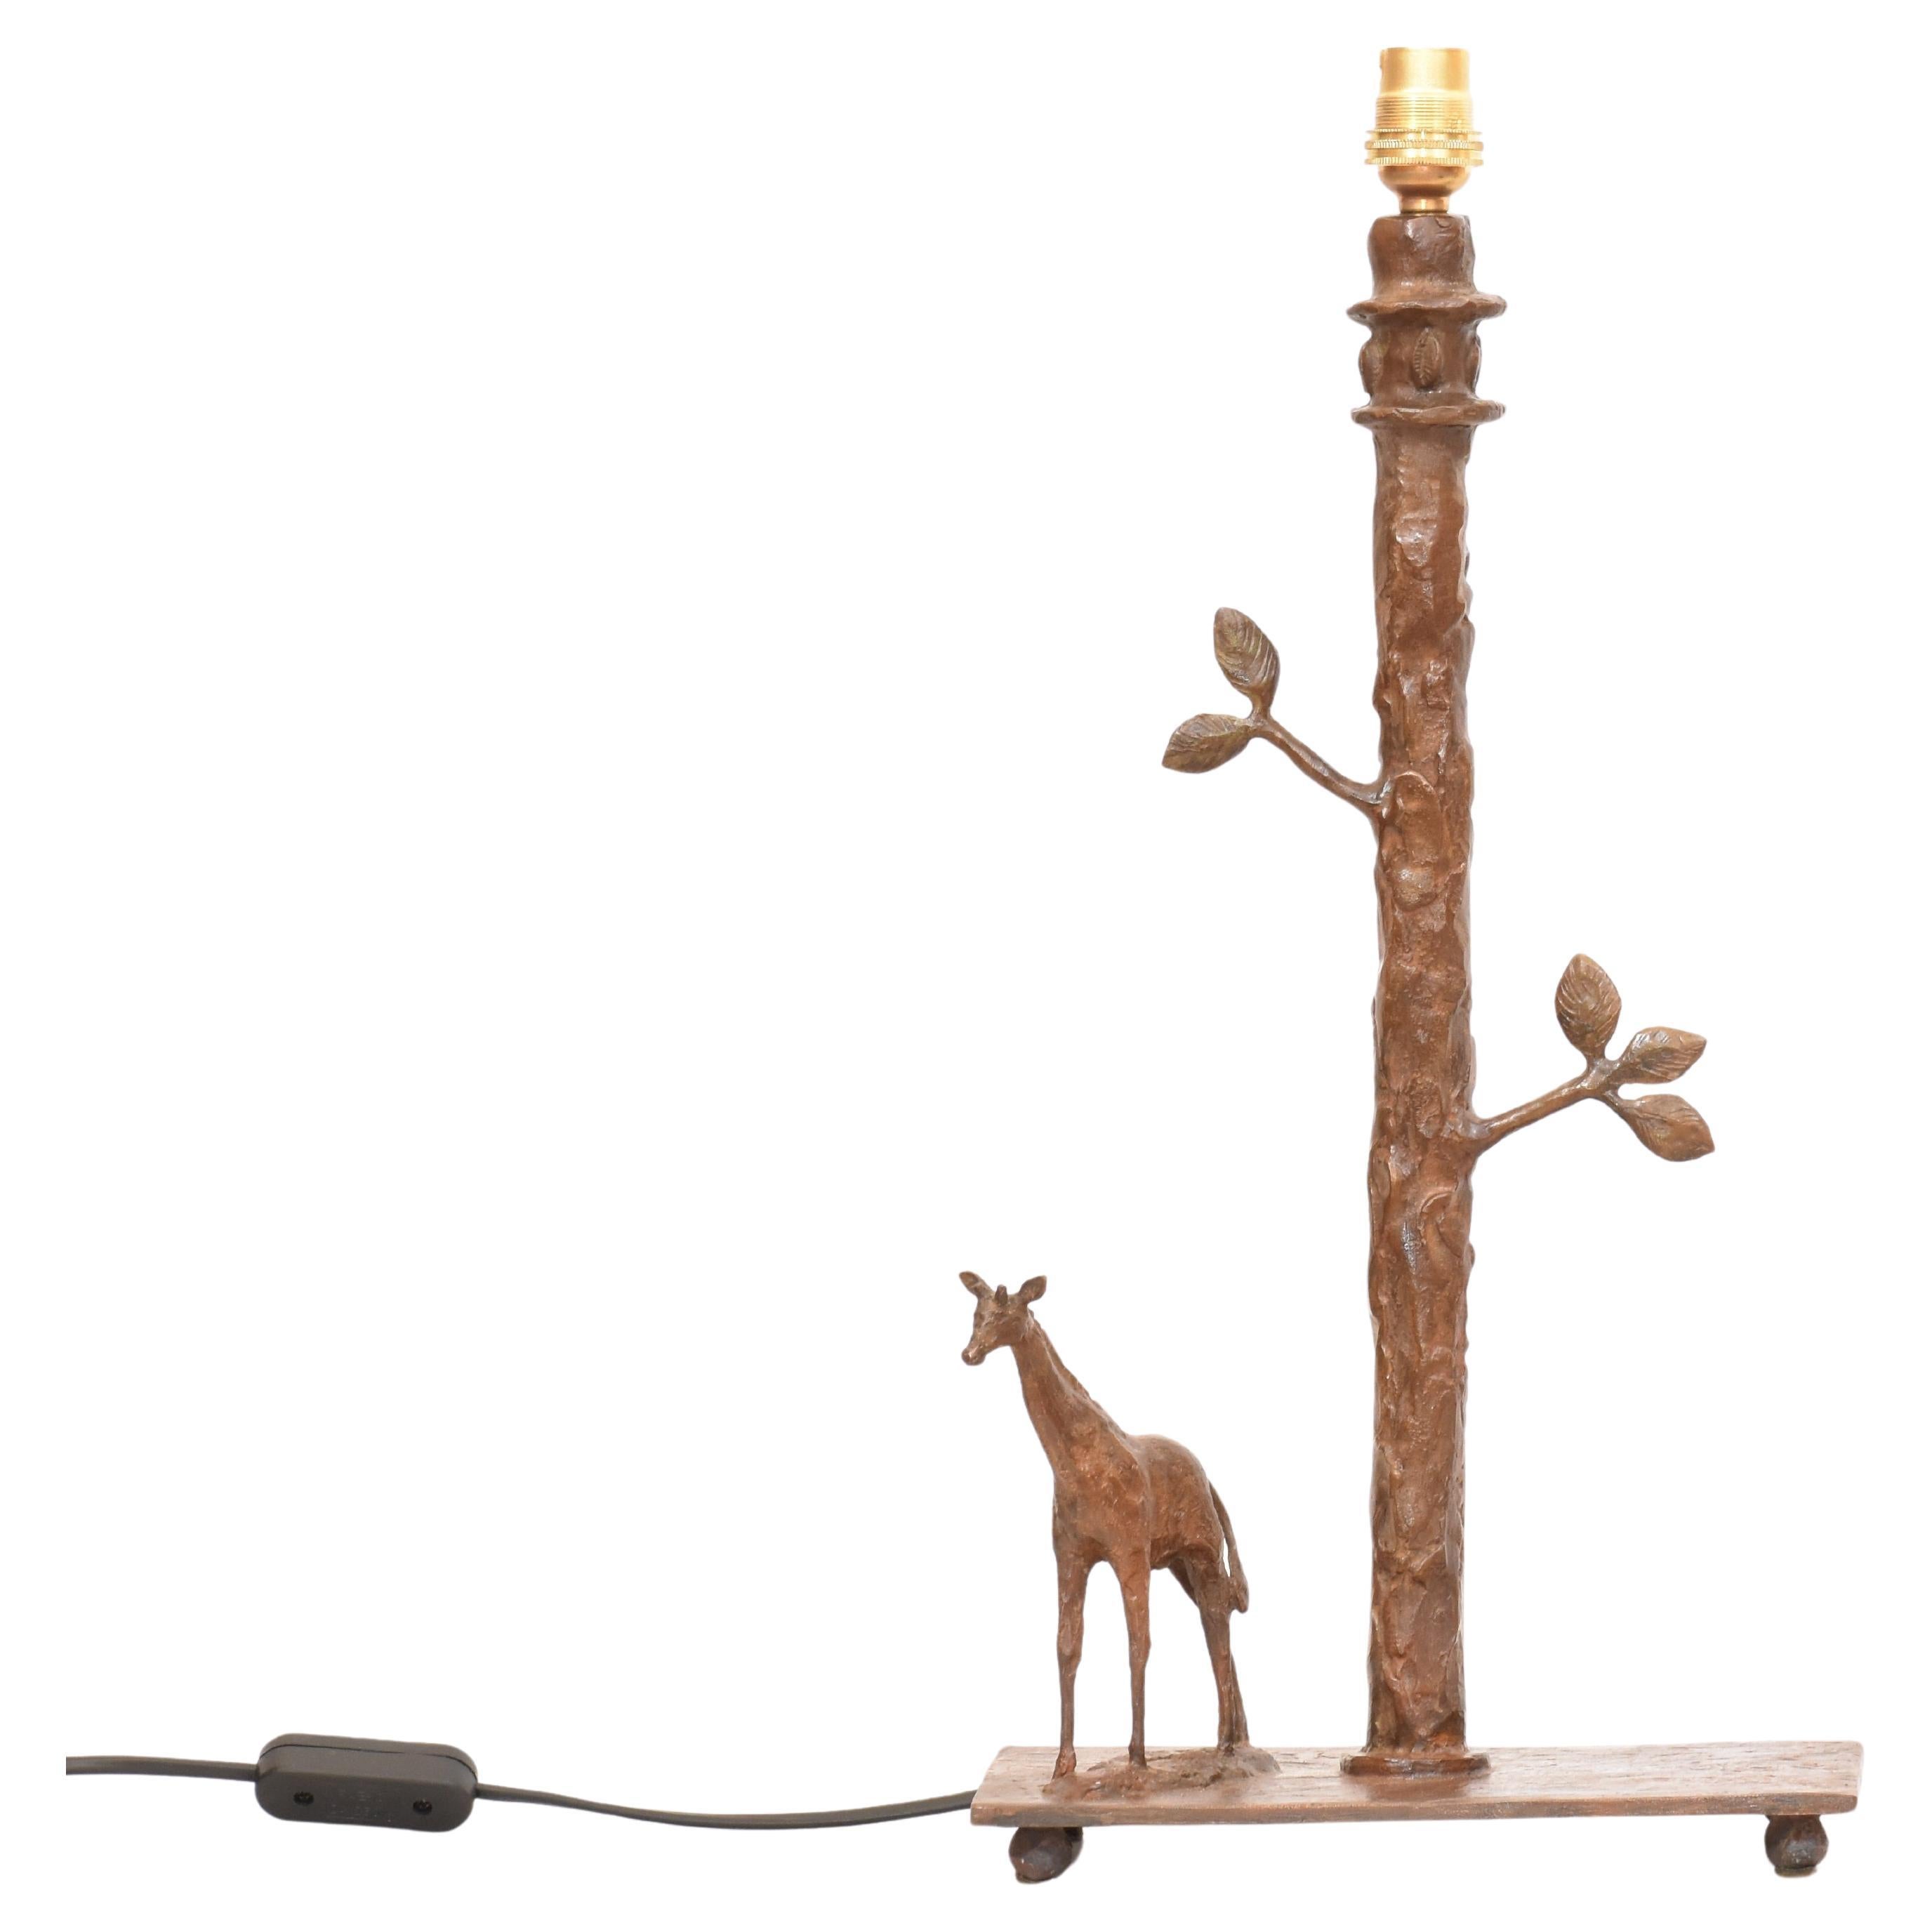 Lampe de table Girafe sculpturale fabriquée à la main en bronze coulé selon la méthode de la cire perdue. Fabriqué à la main - sculpté, moulé et fini individuellement à la main, ce qui fait de chaque pièce une pièce unique.

Hauteur 41 cm (y compris